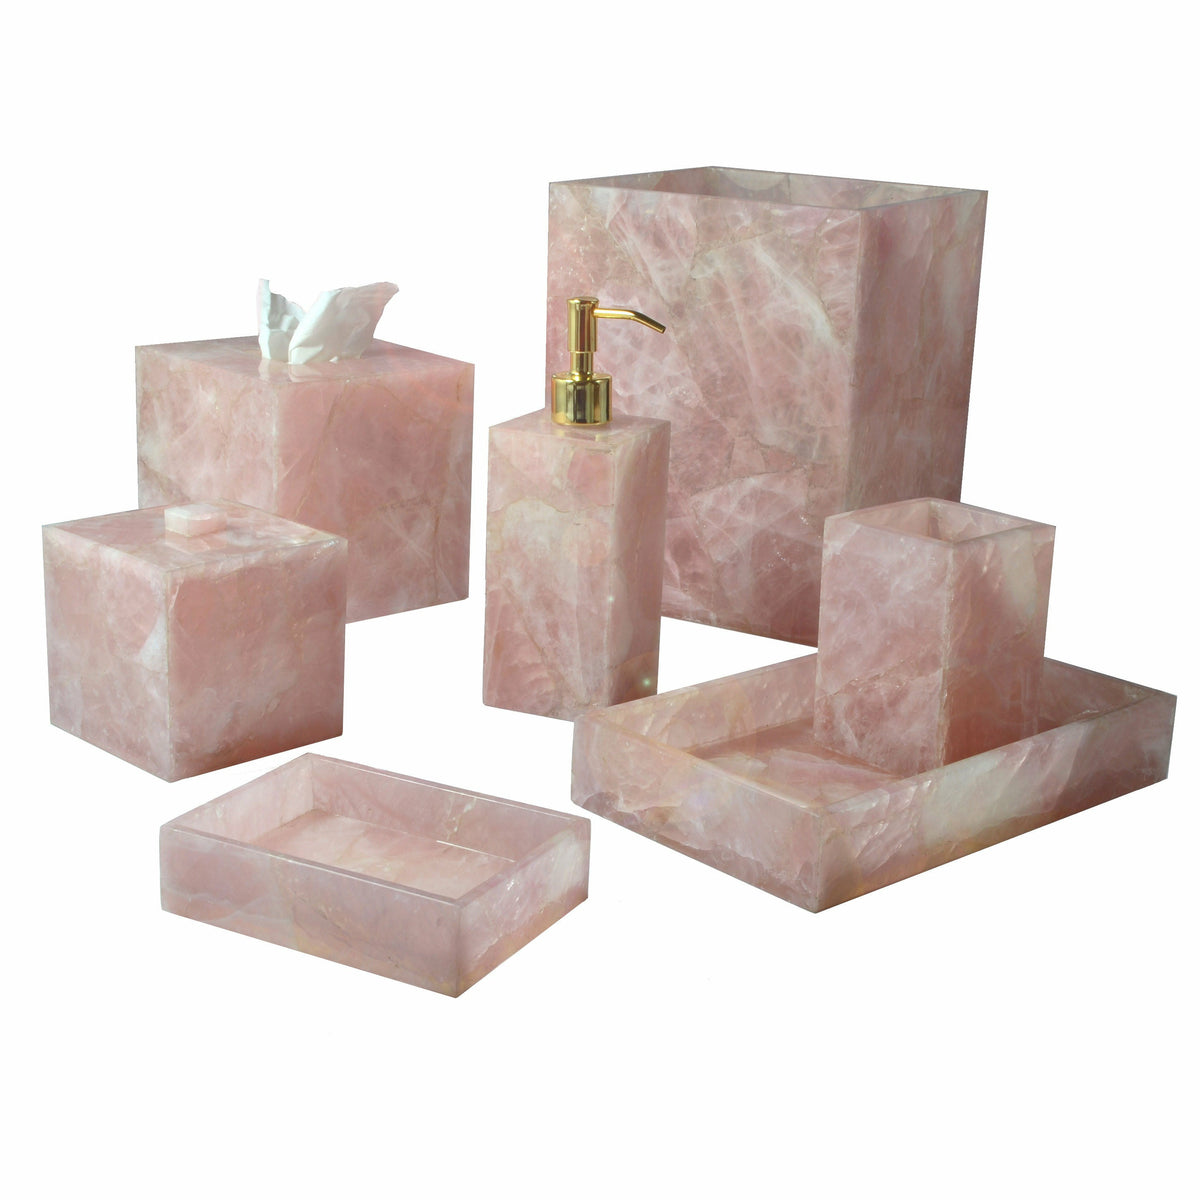 Mike and Ally Taj Premium Gemstone Bath Accessories Rose Quartz